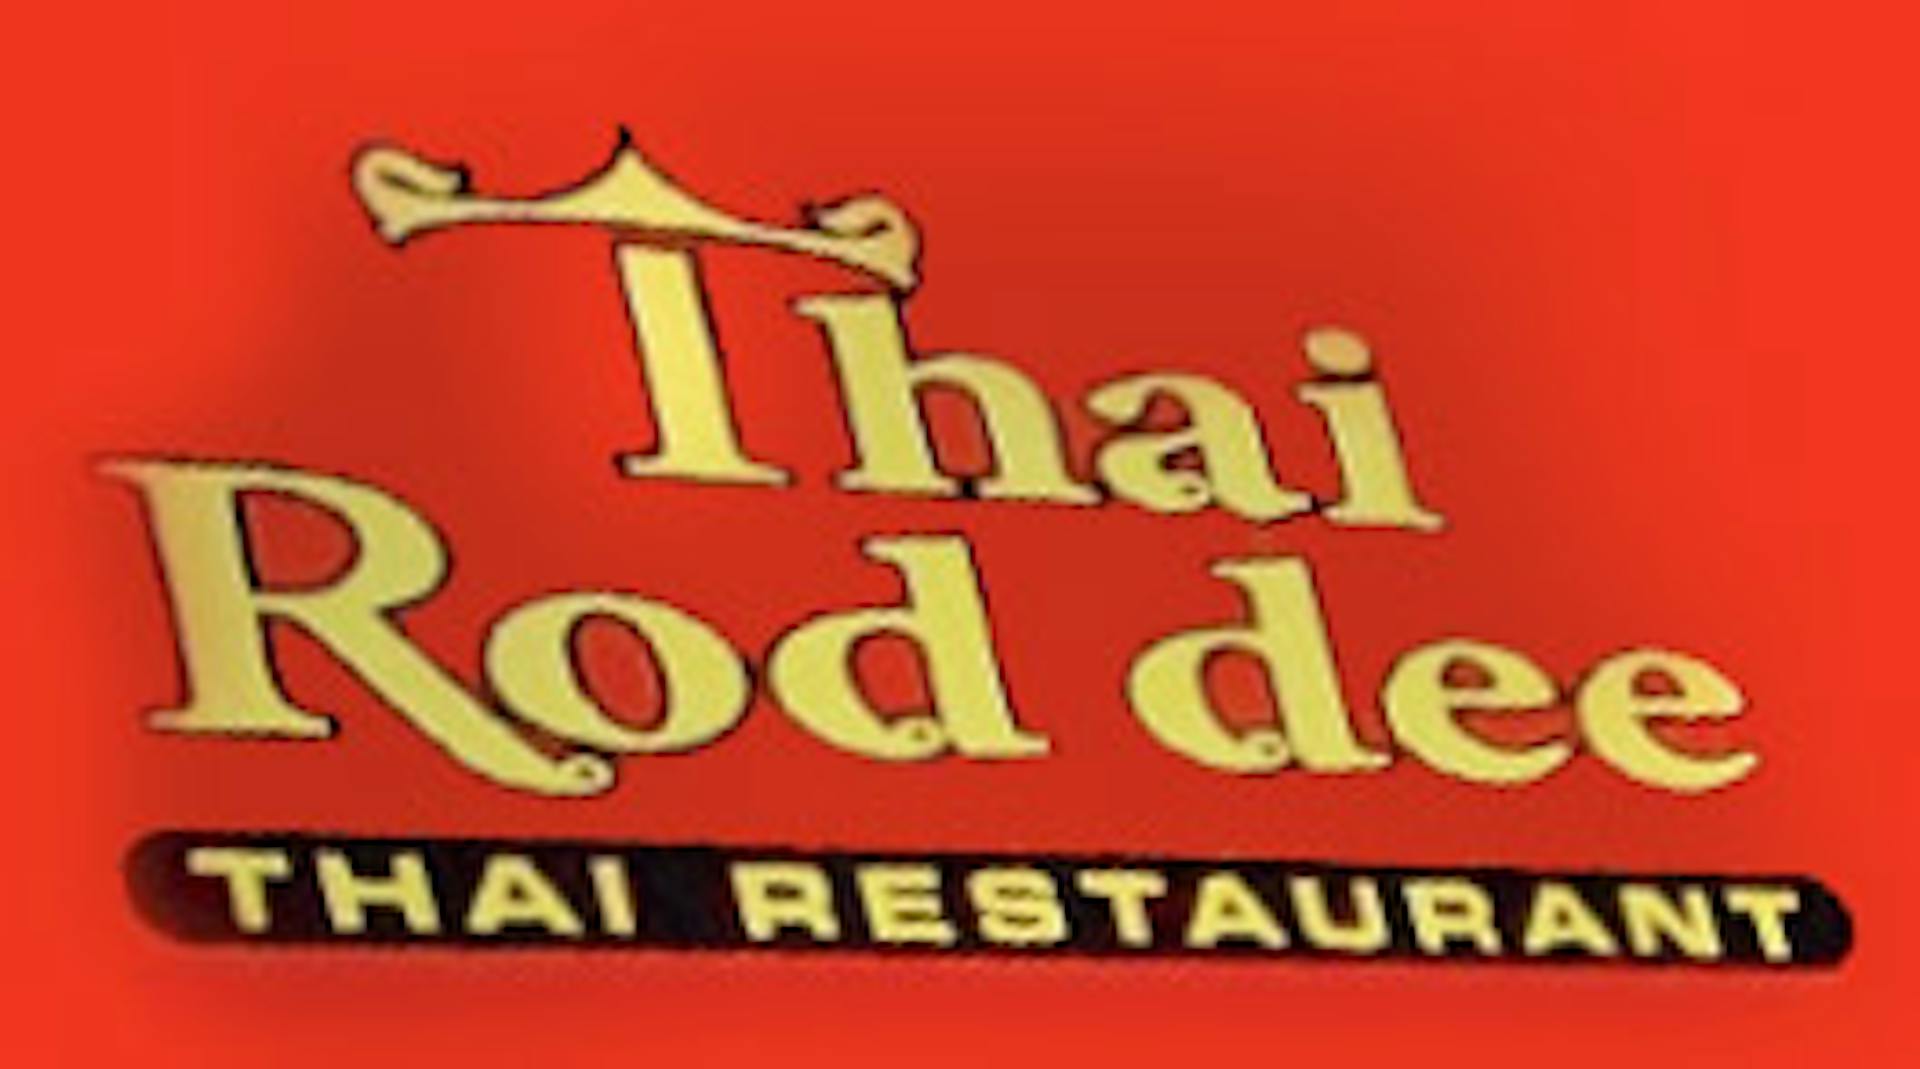 Thai Rod Dee